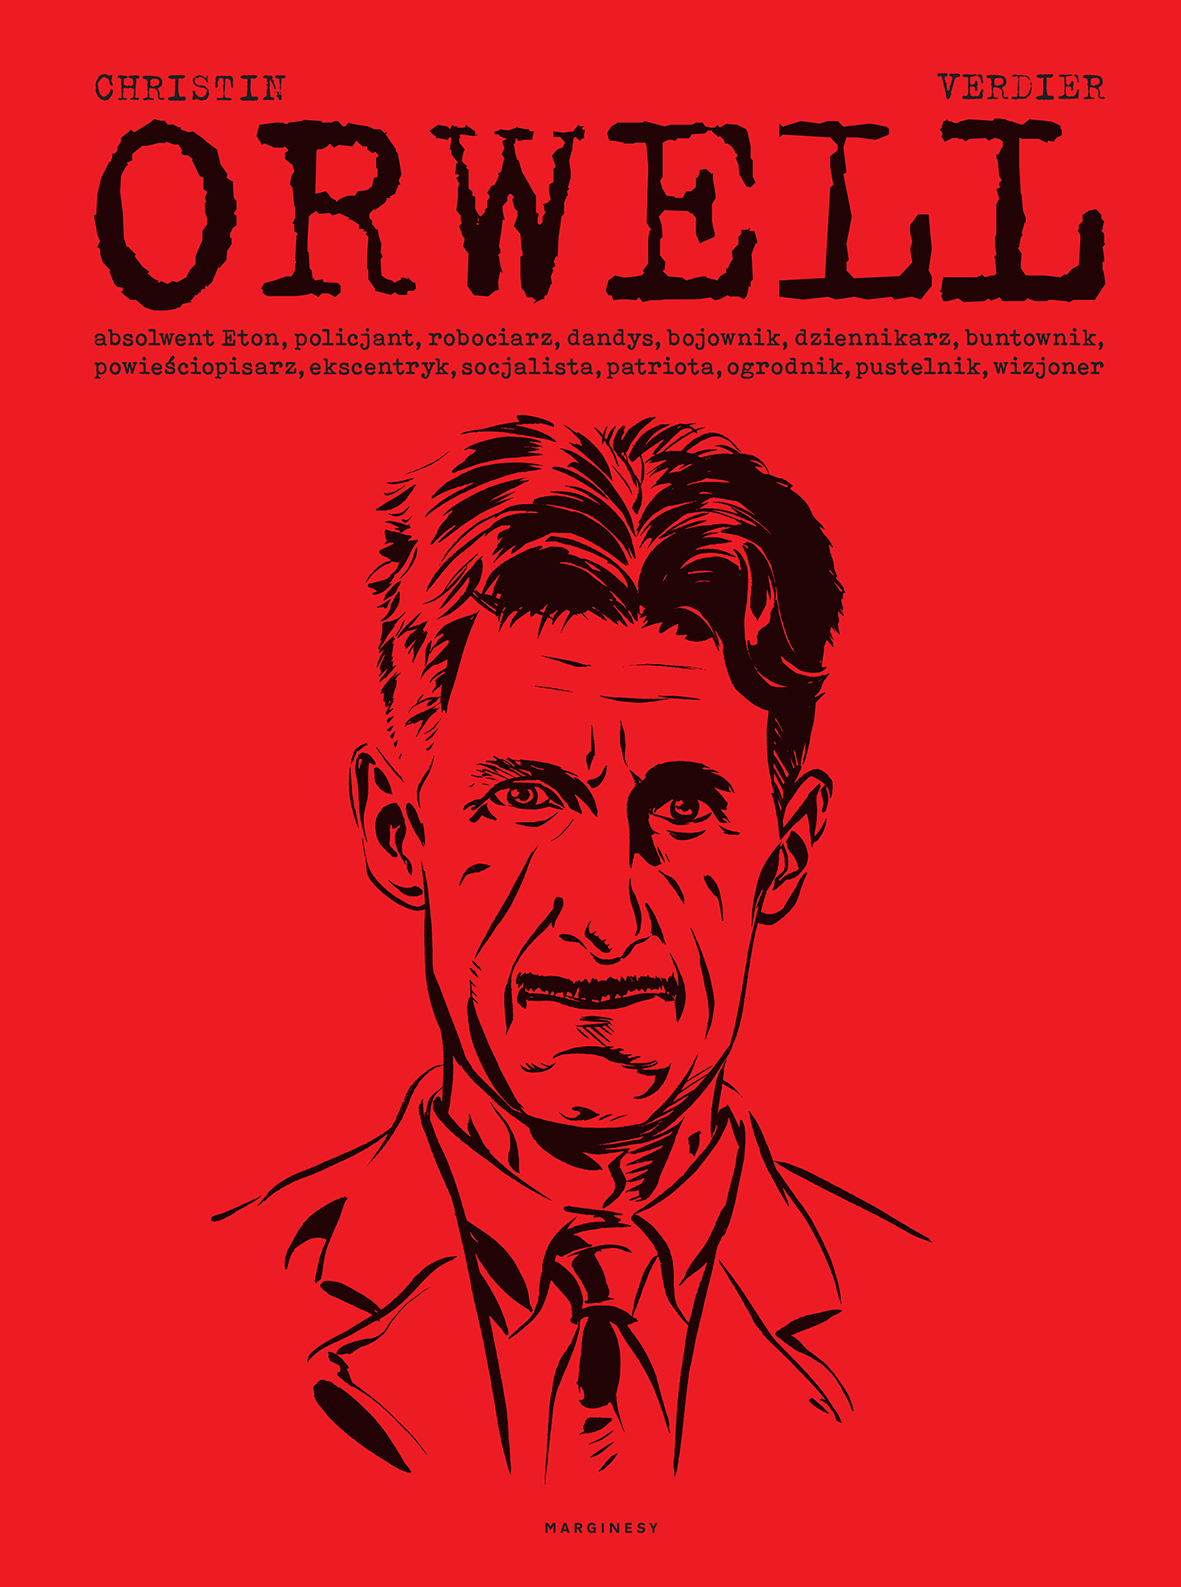 Komiksy na podstawie książek George'a Orwella.